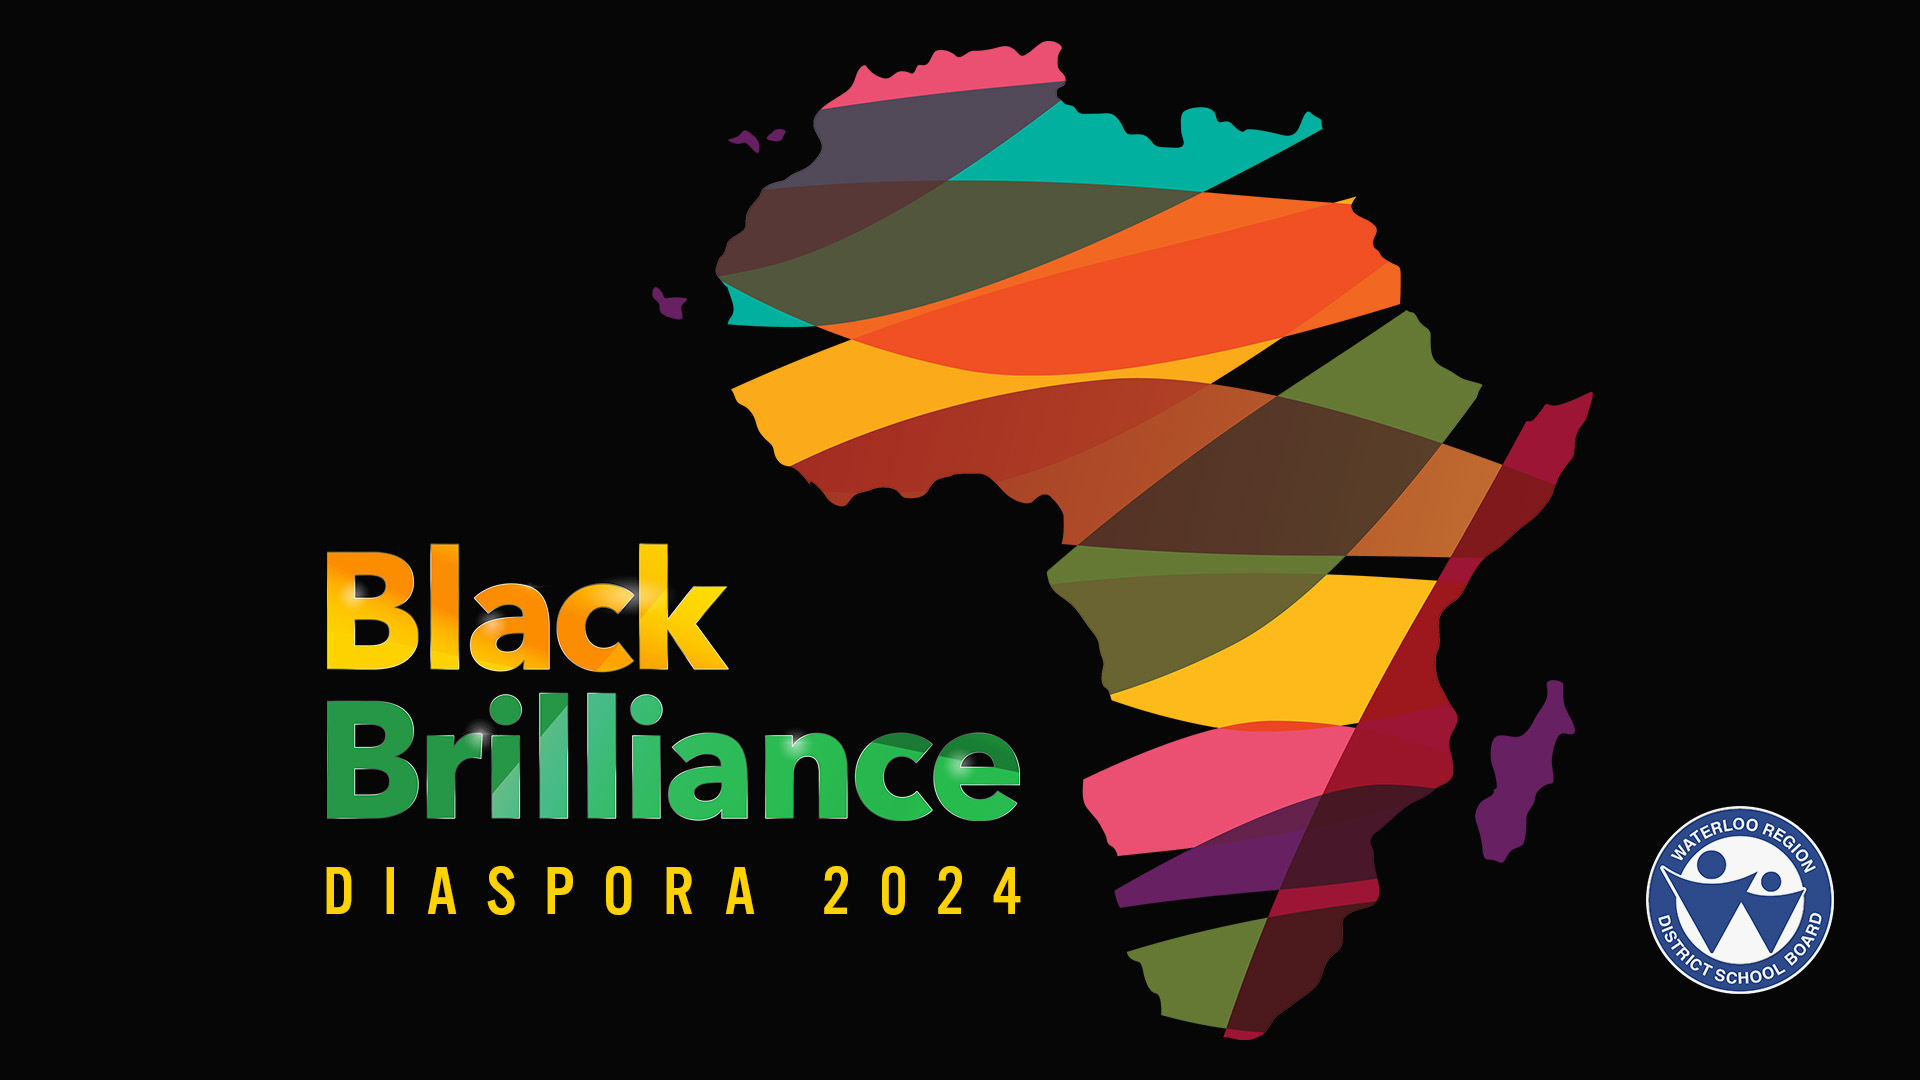 Black Brilliance Diaspora 2024